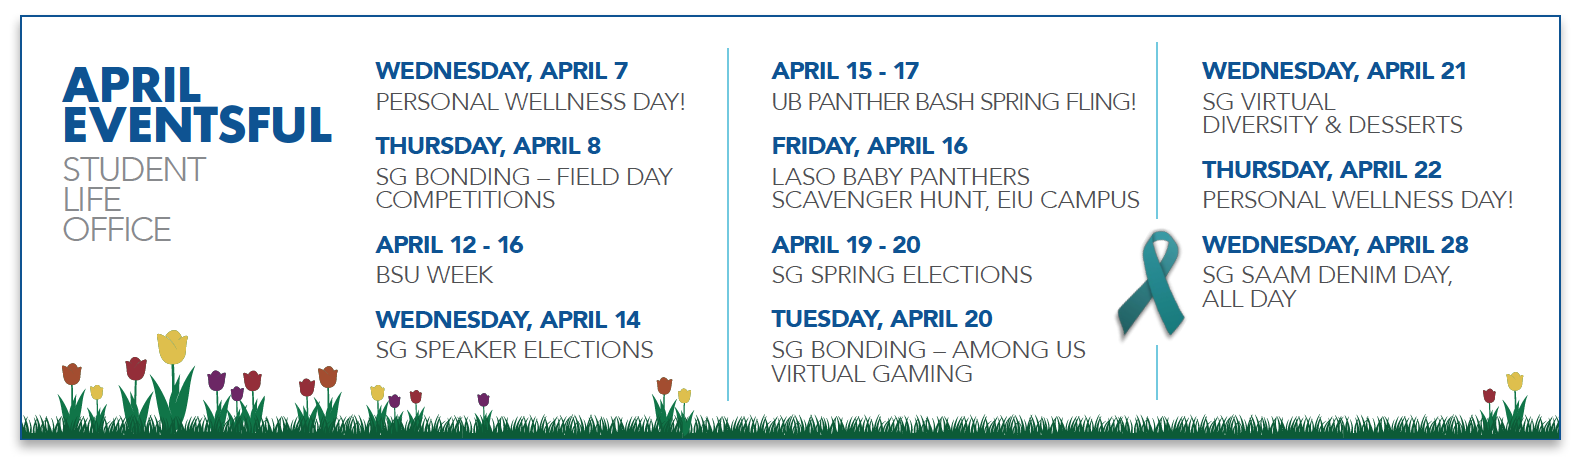 April events events.